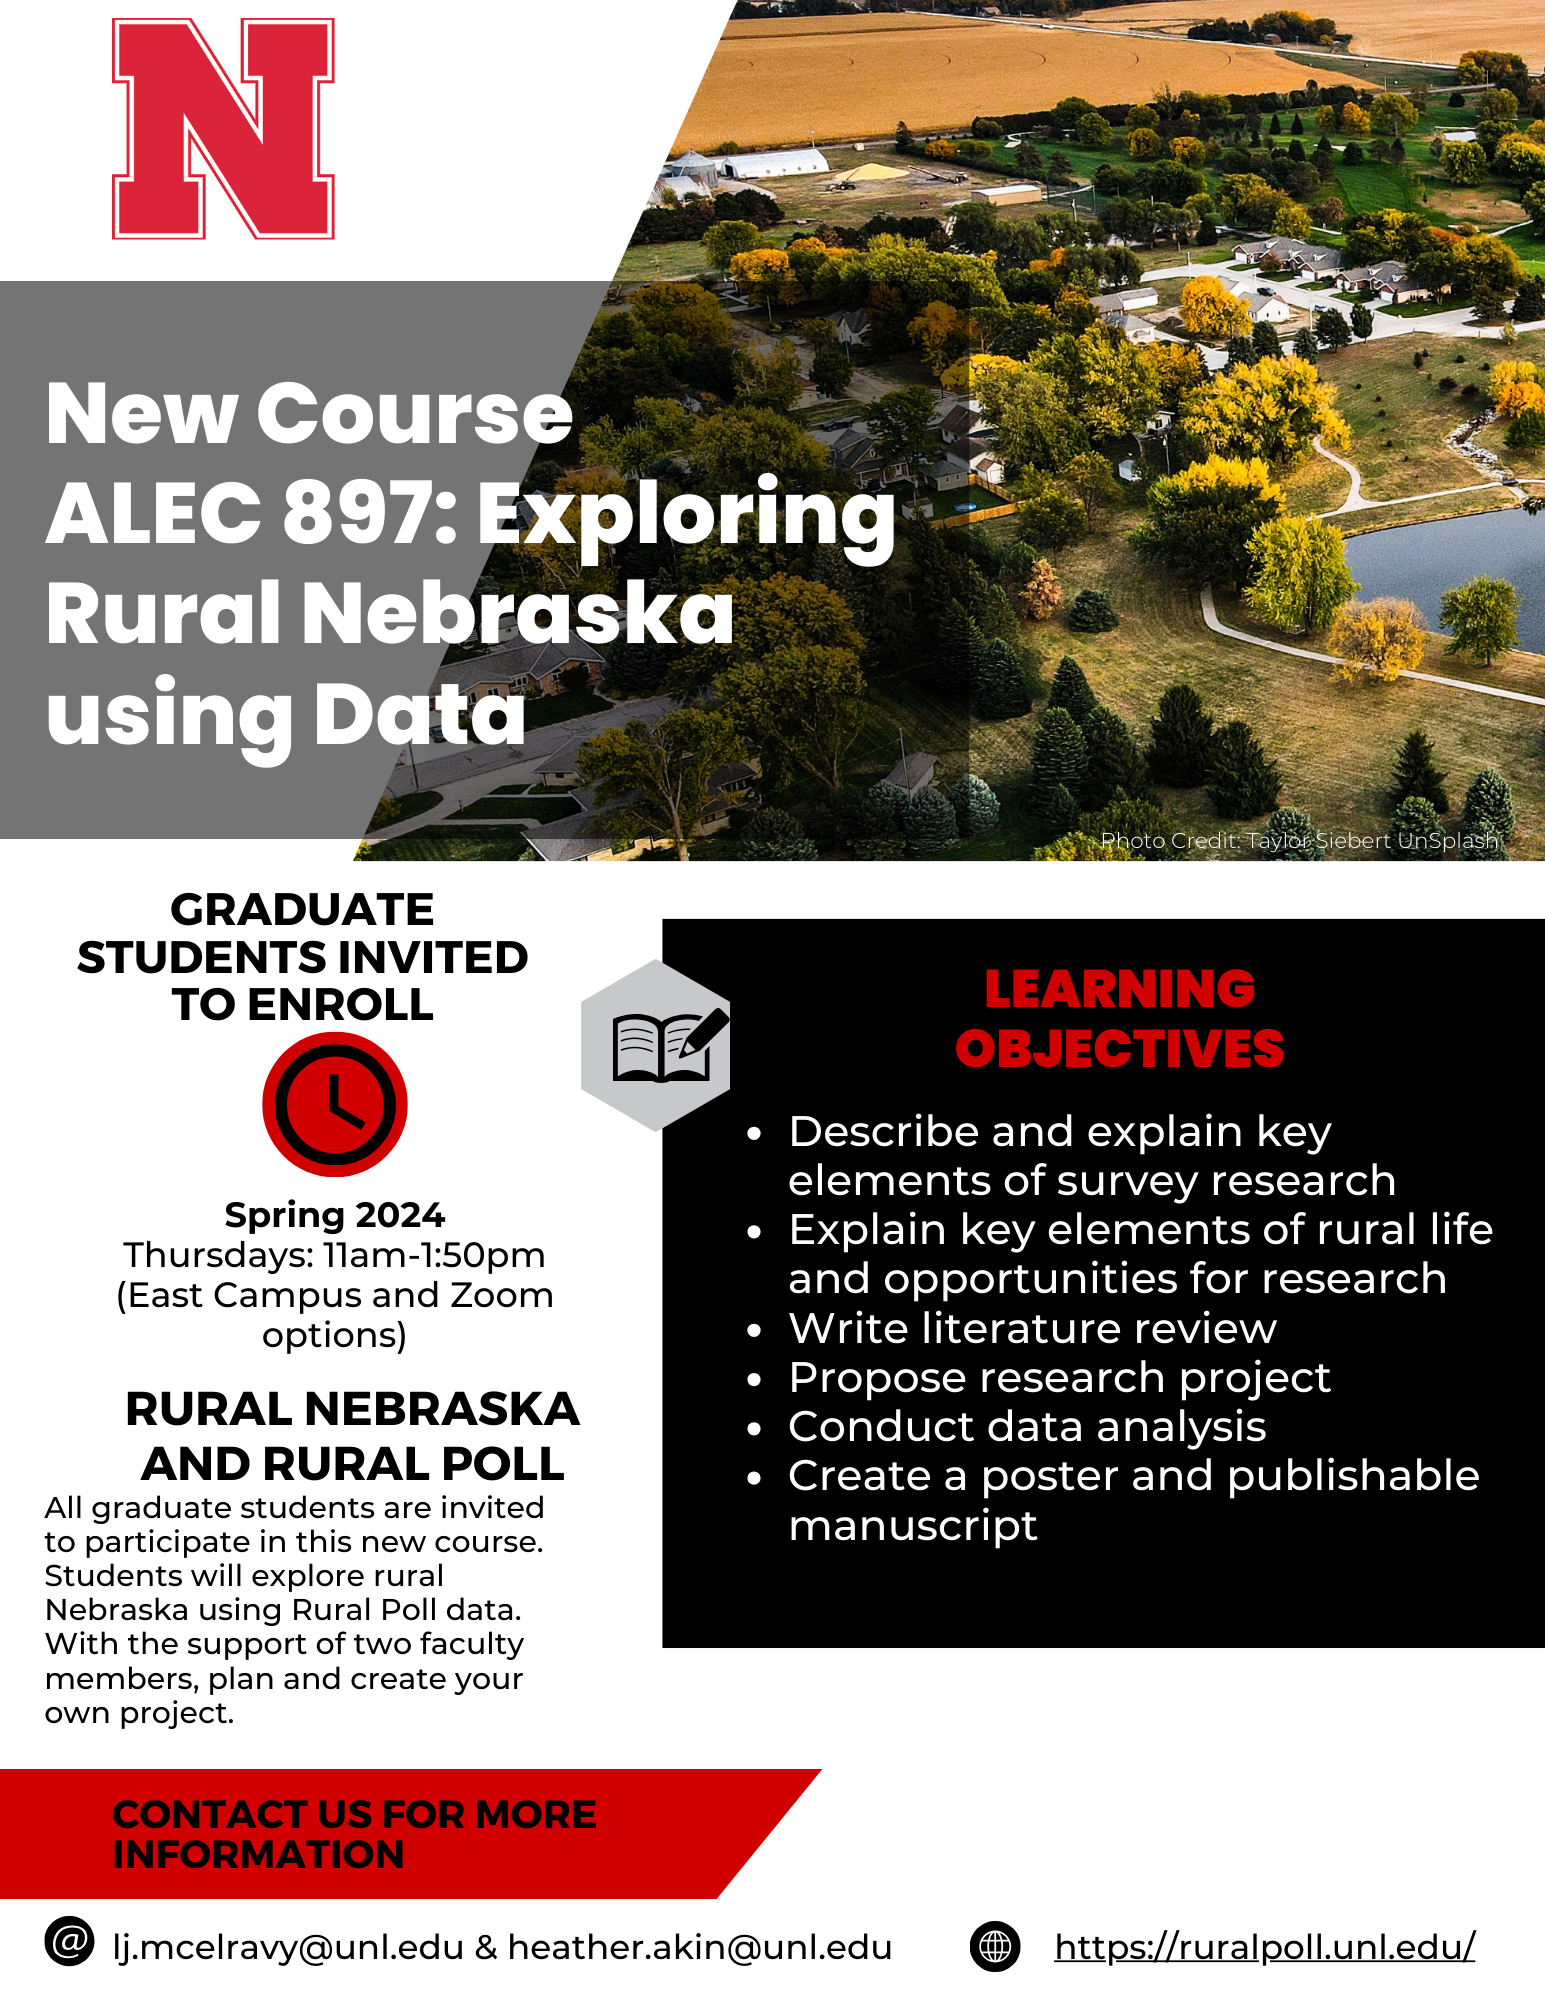 Flyer for New Class Focused on Exploring Rural Nebraska using Rural Poll Data